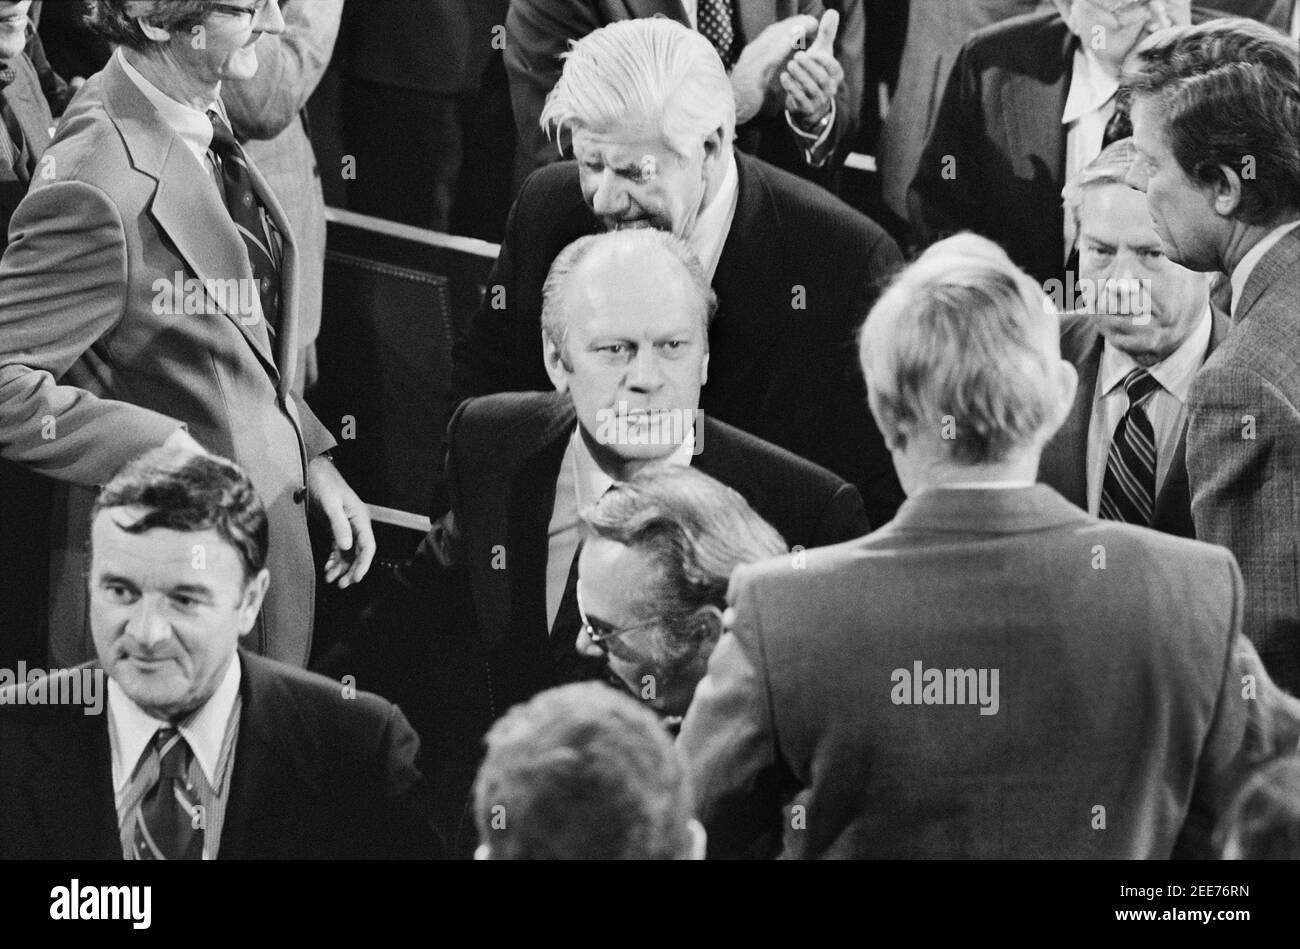 El Presidente de los Estados Unidos Gerald Ford rodeado por miembros del 94º Congreso, incluyendo al líder de la mayoría Tip o'Neill, después de entregar el discurso del Estado de la Unión, Washington, D.C., EE.UU., Marion S. Trikosko, 15 de enero de 1975 Foto de stock